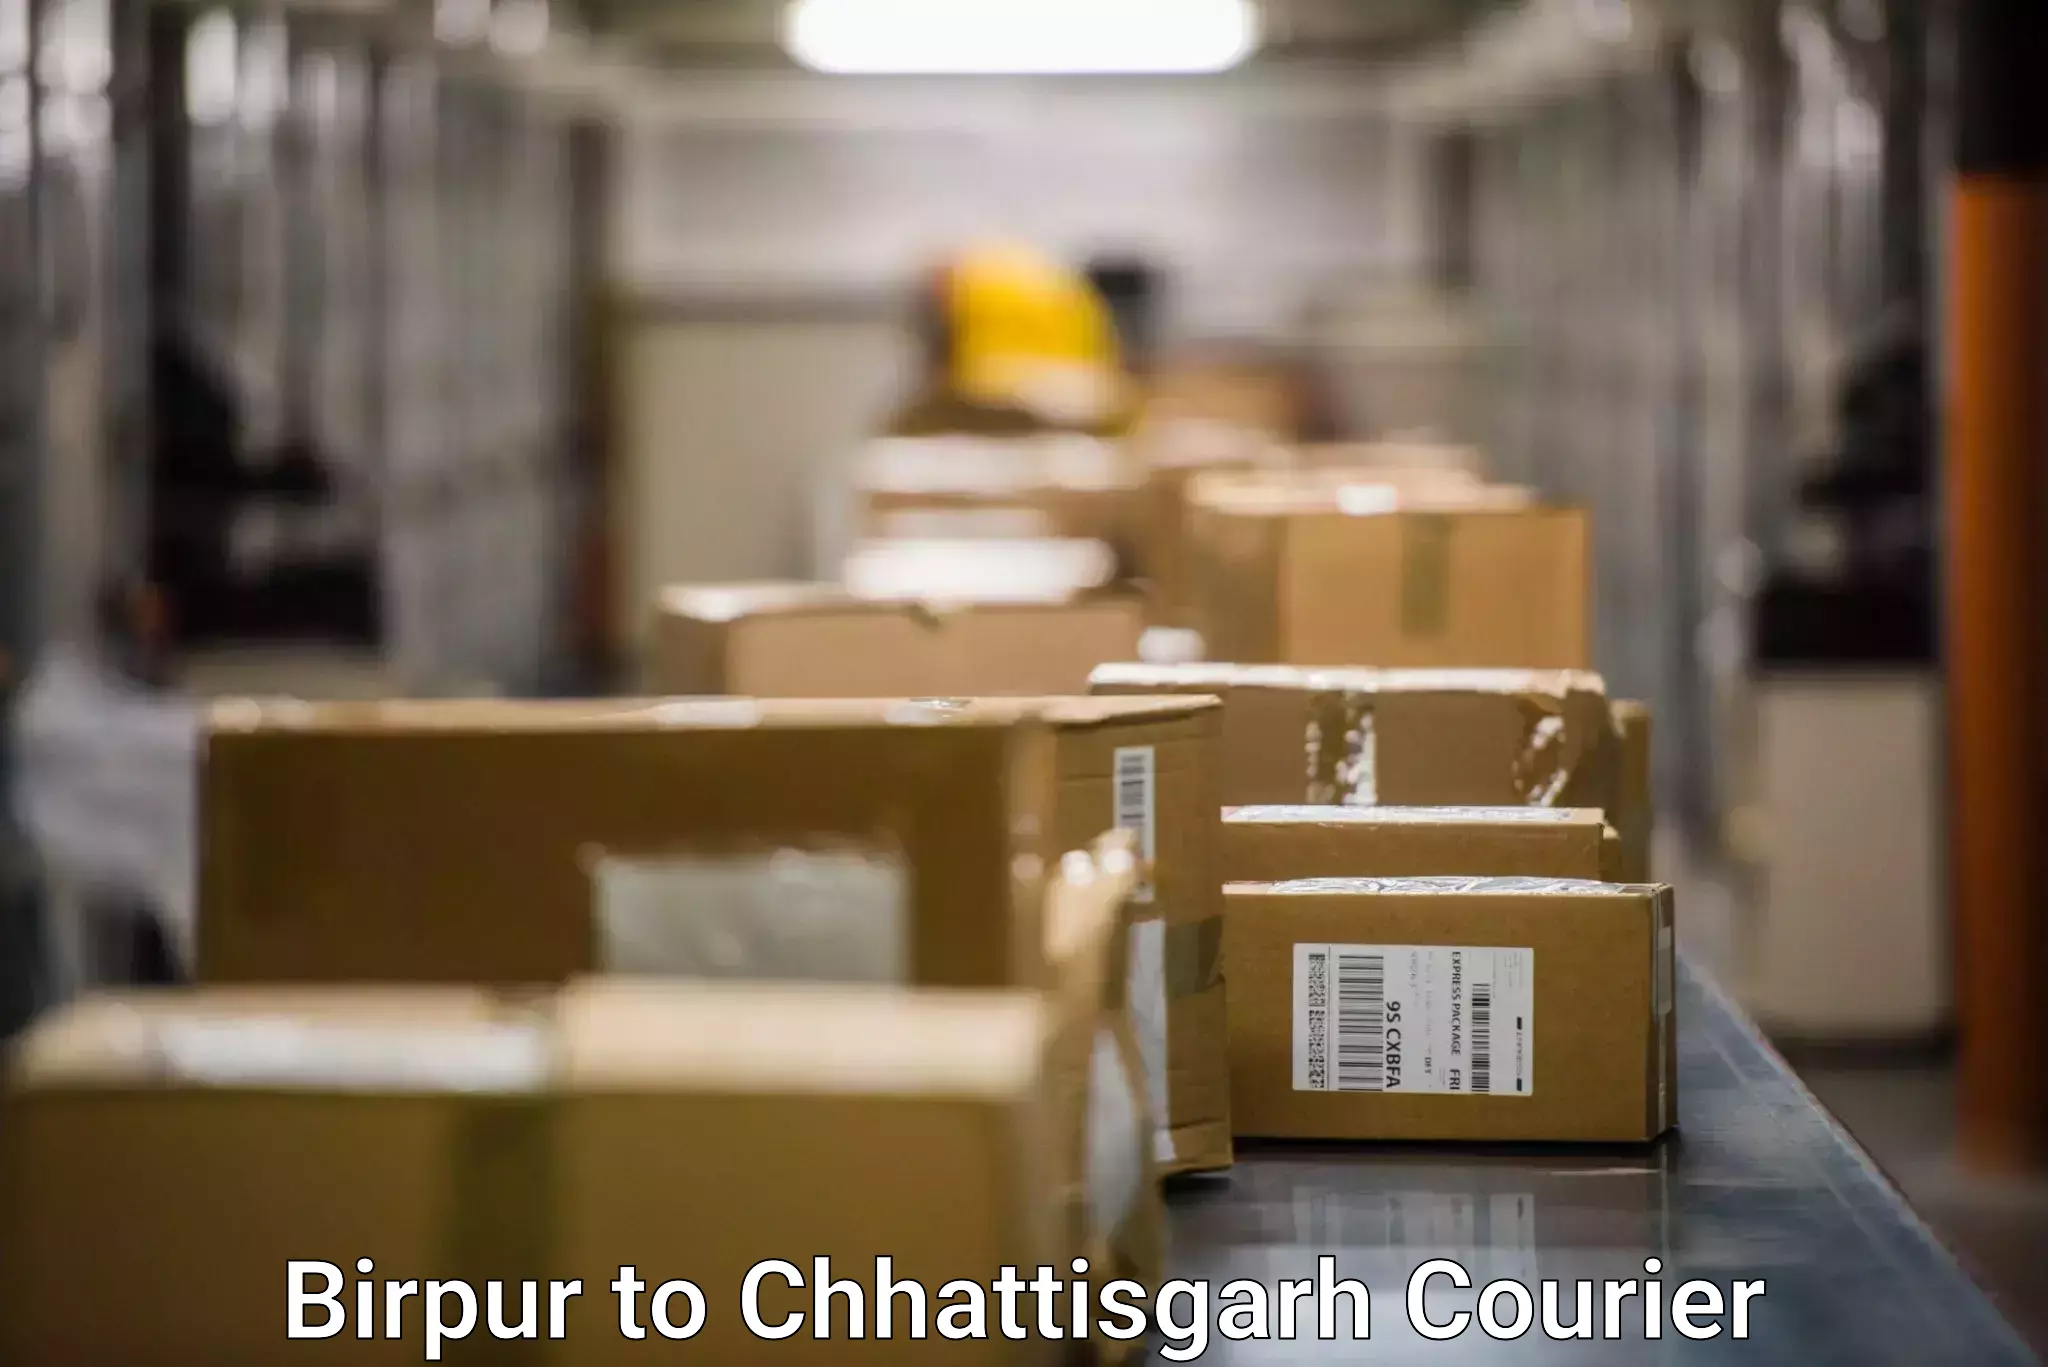 Customer-centric shipping Birpur to Patna Chhattisgarh